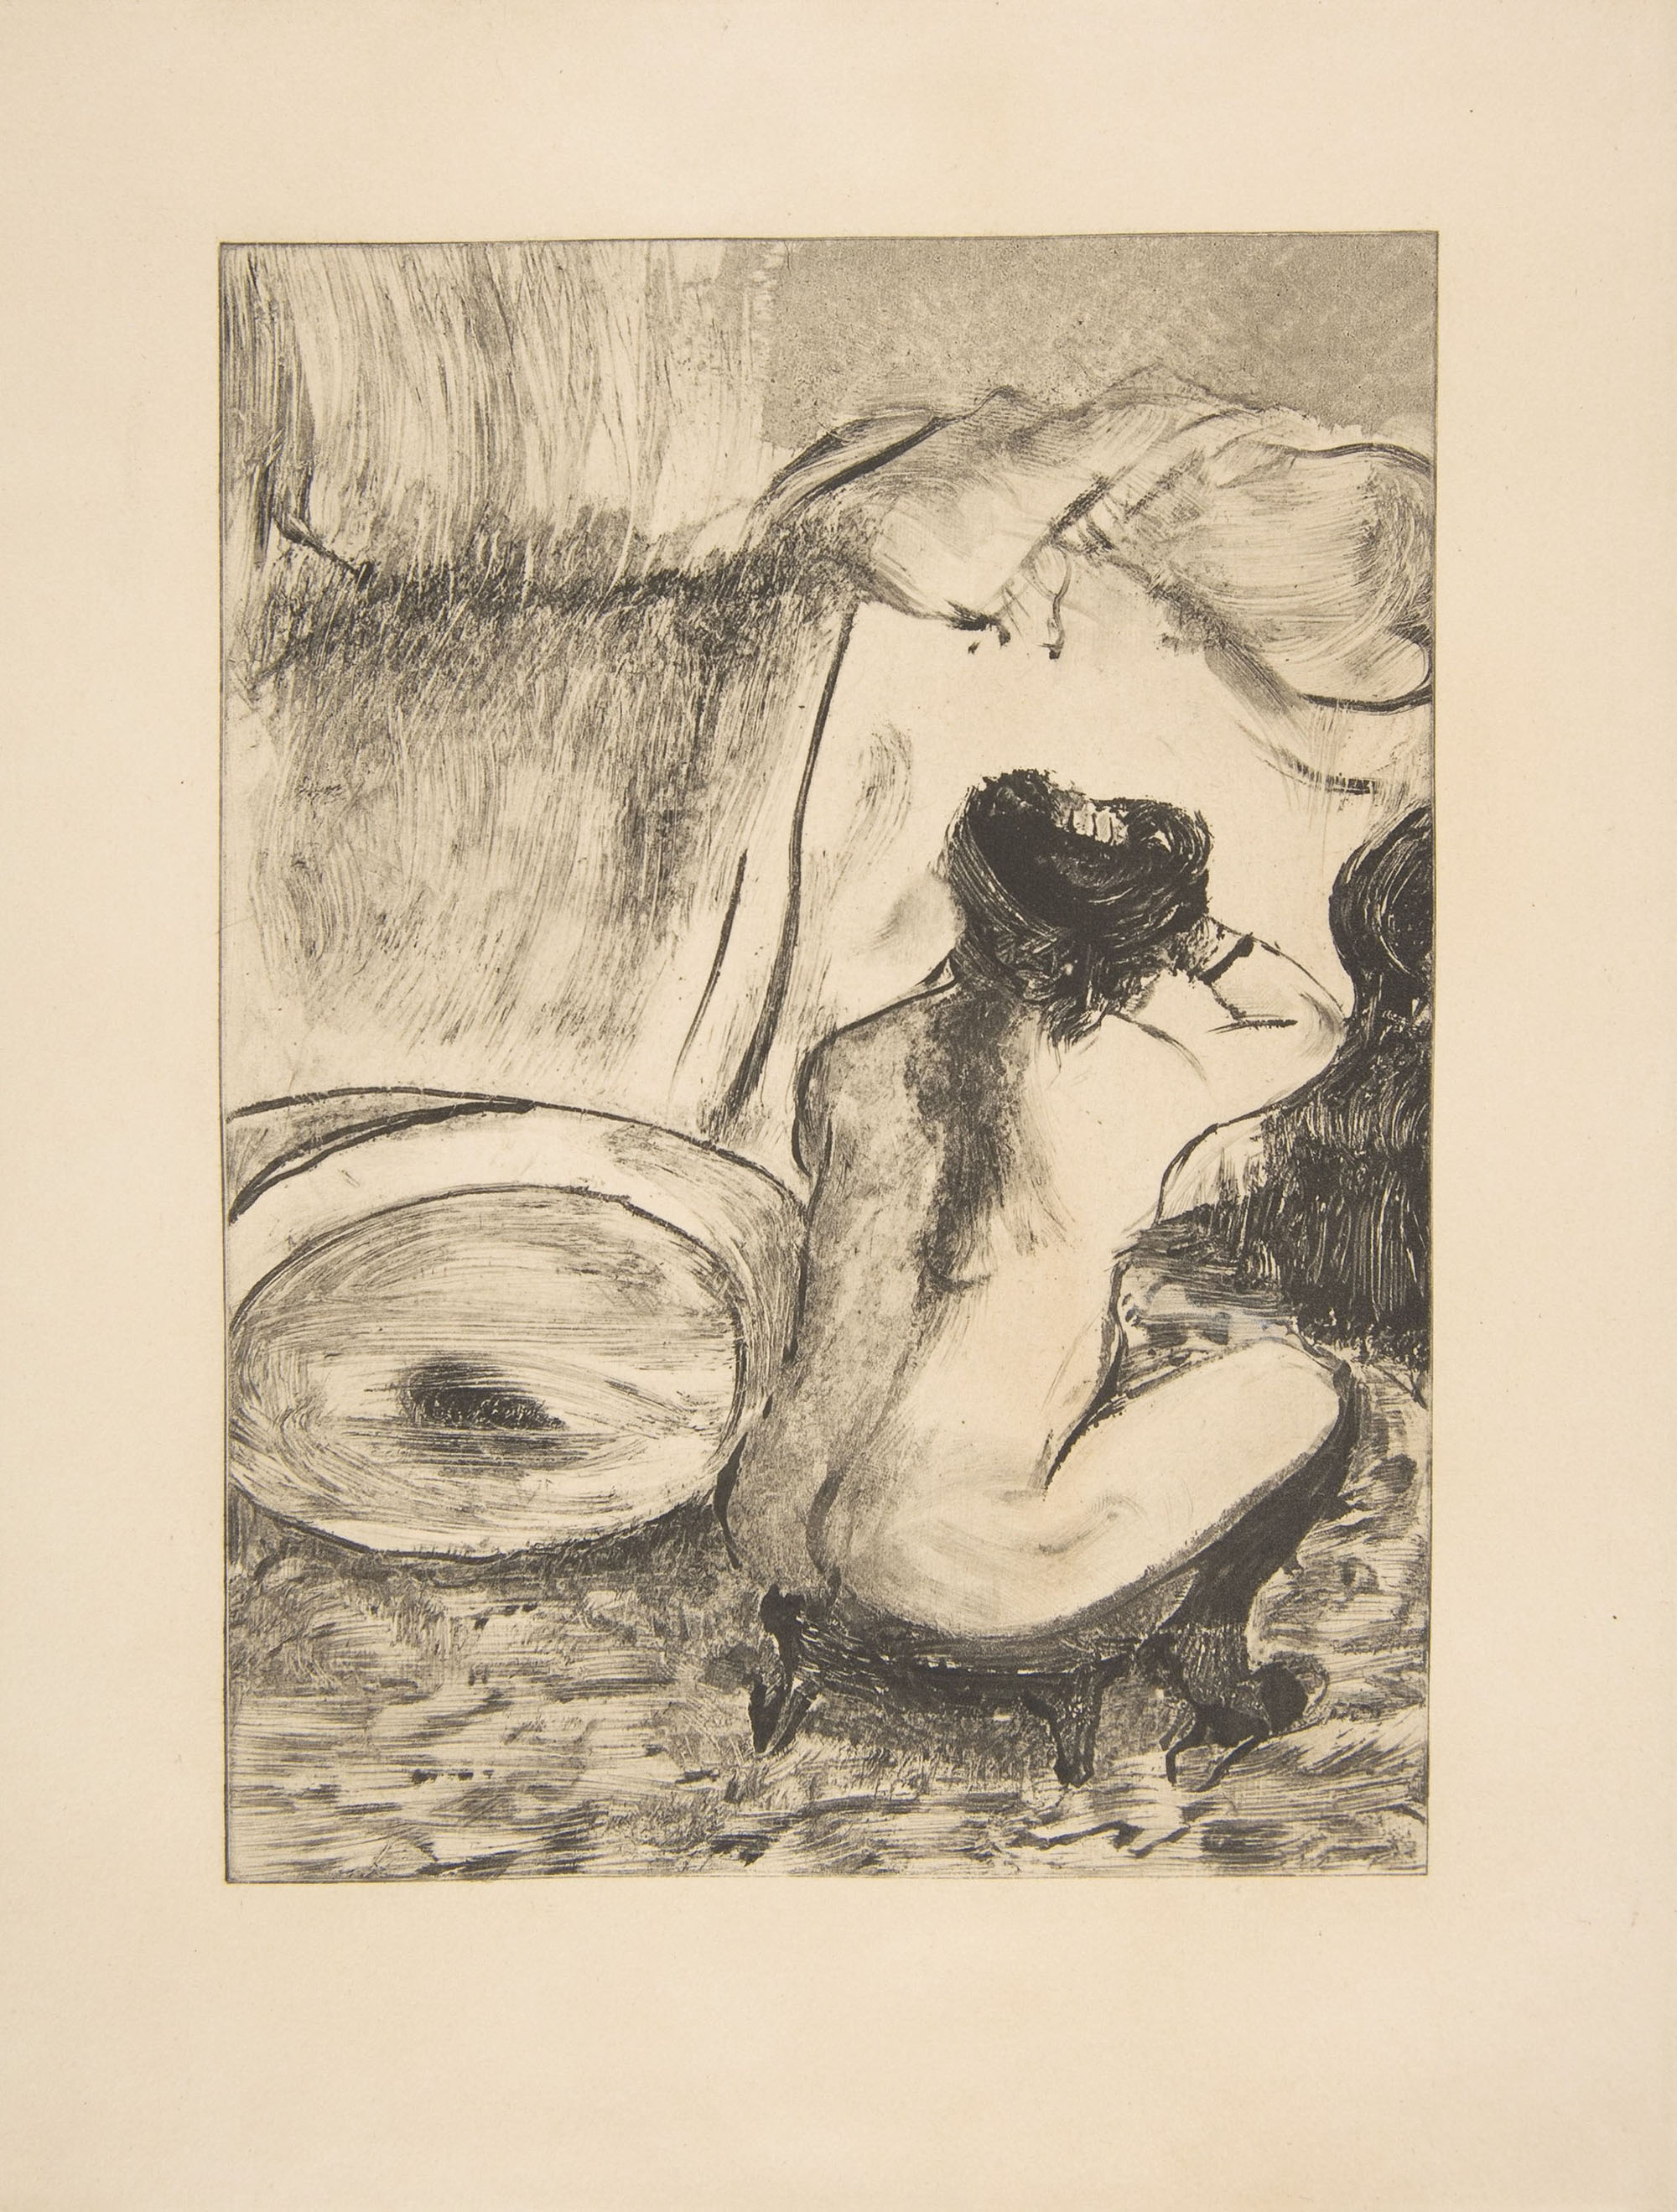 Эдгар Дега. "Сидящая обнажённая женщина со спины". Около 1880.